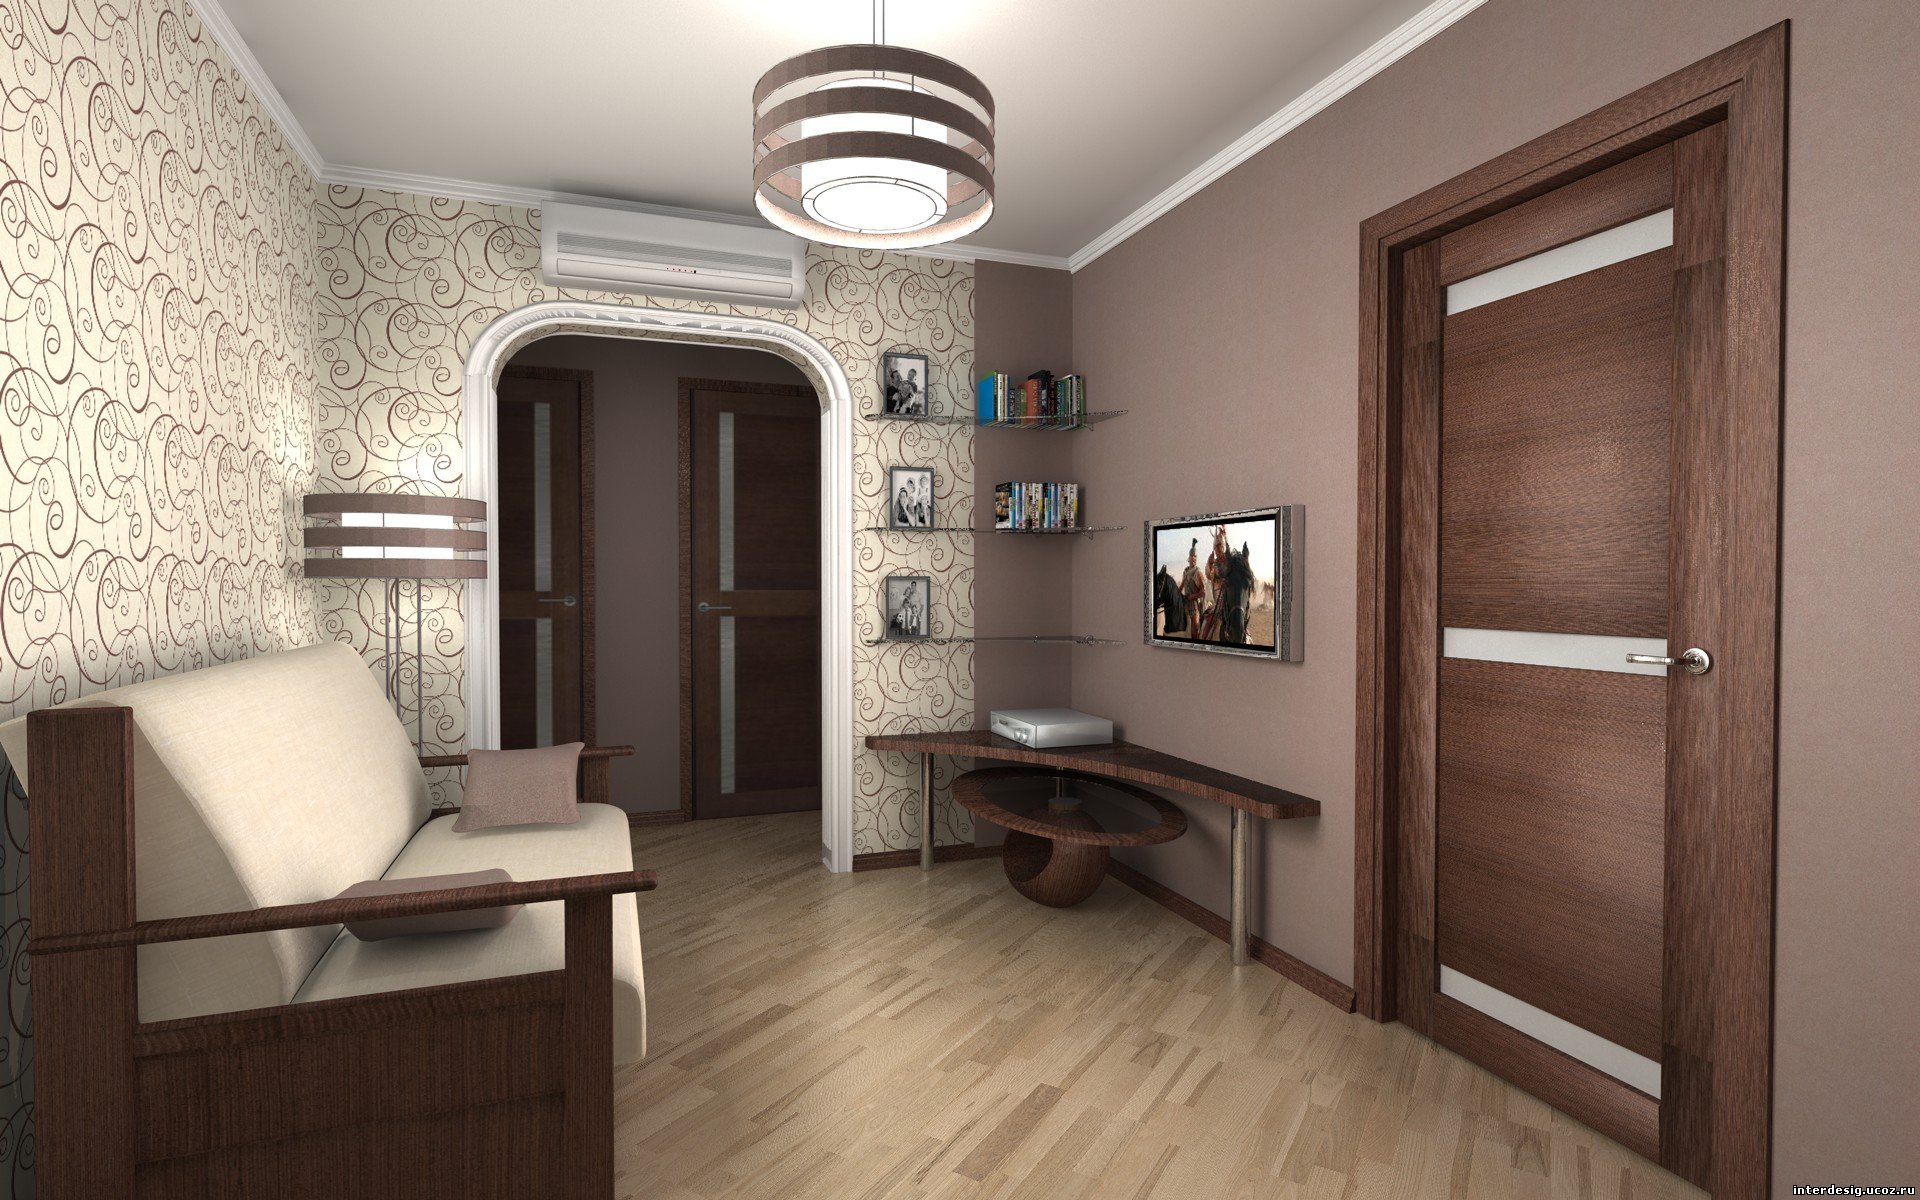 дизайн интерьера квартиры 3 комнатной московской планировки